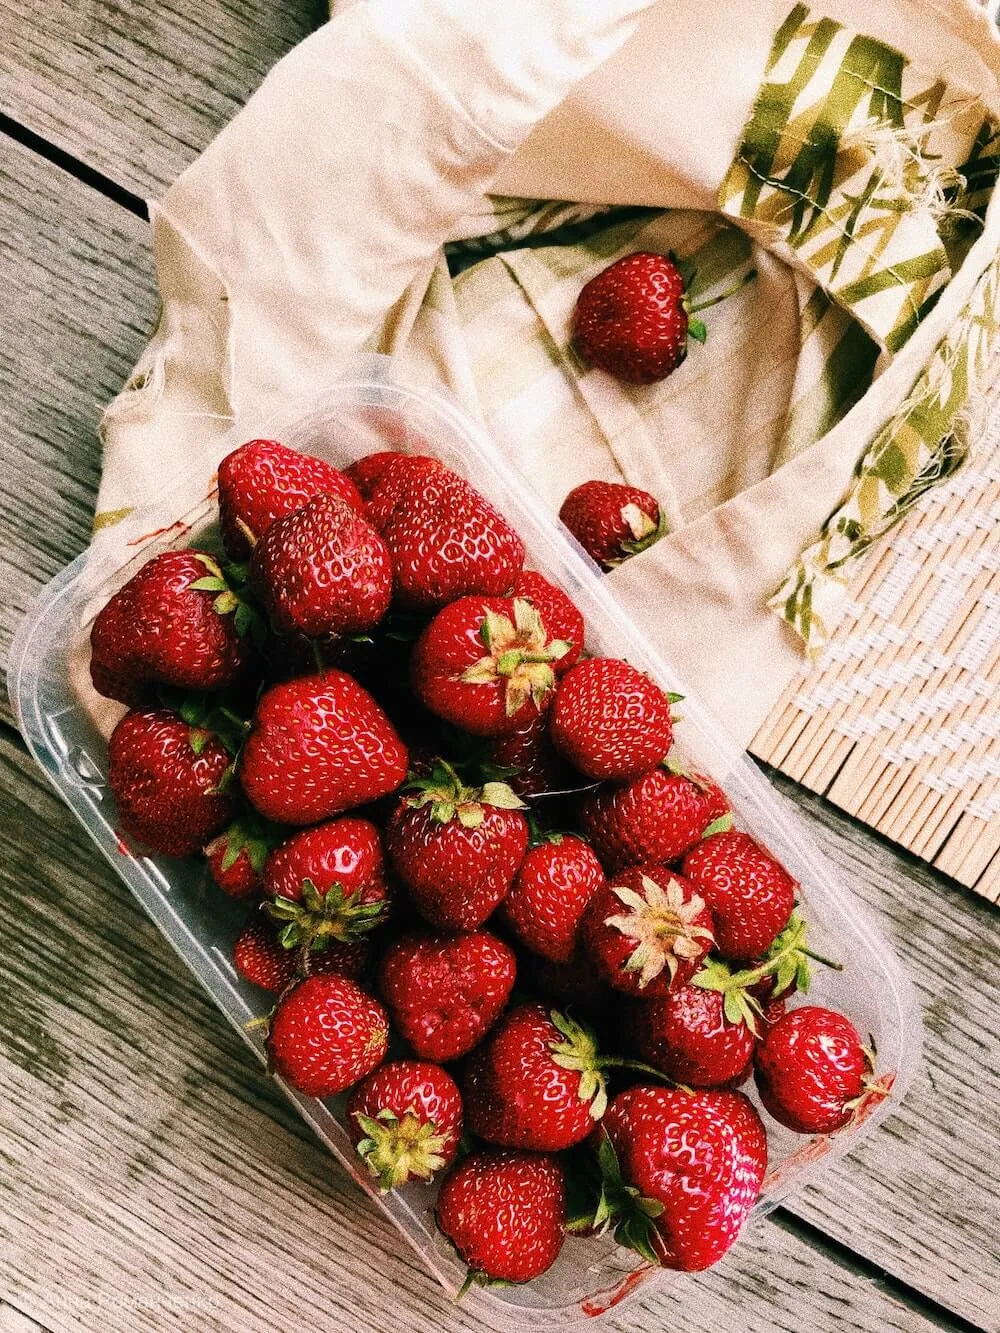 strawberries photo